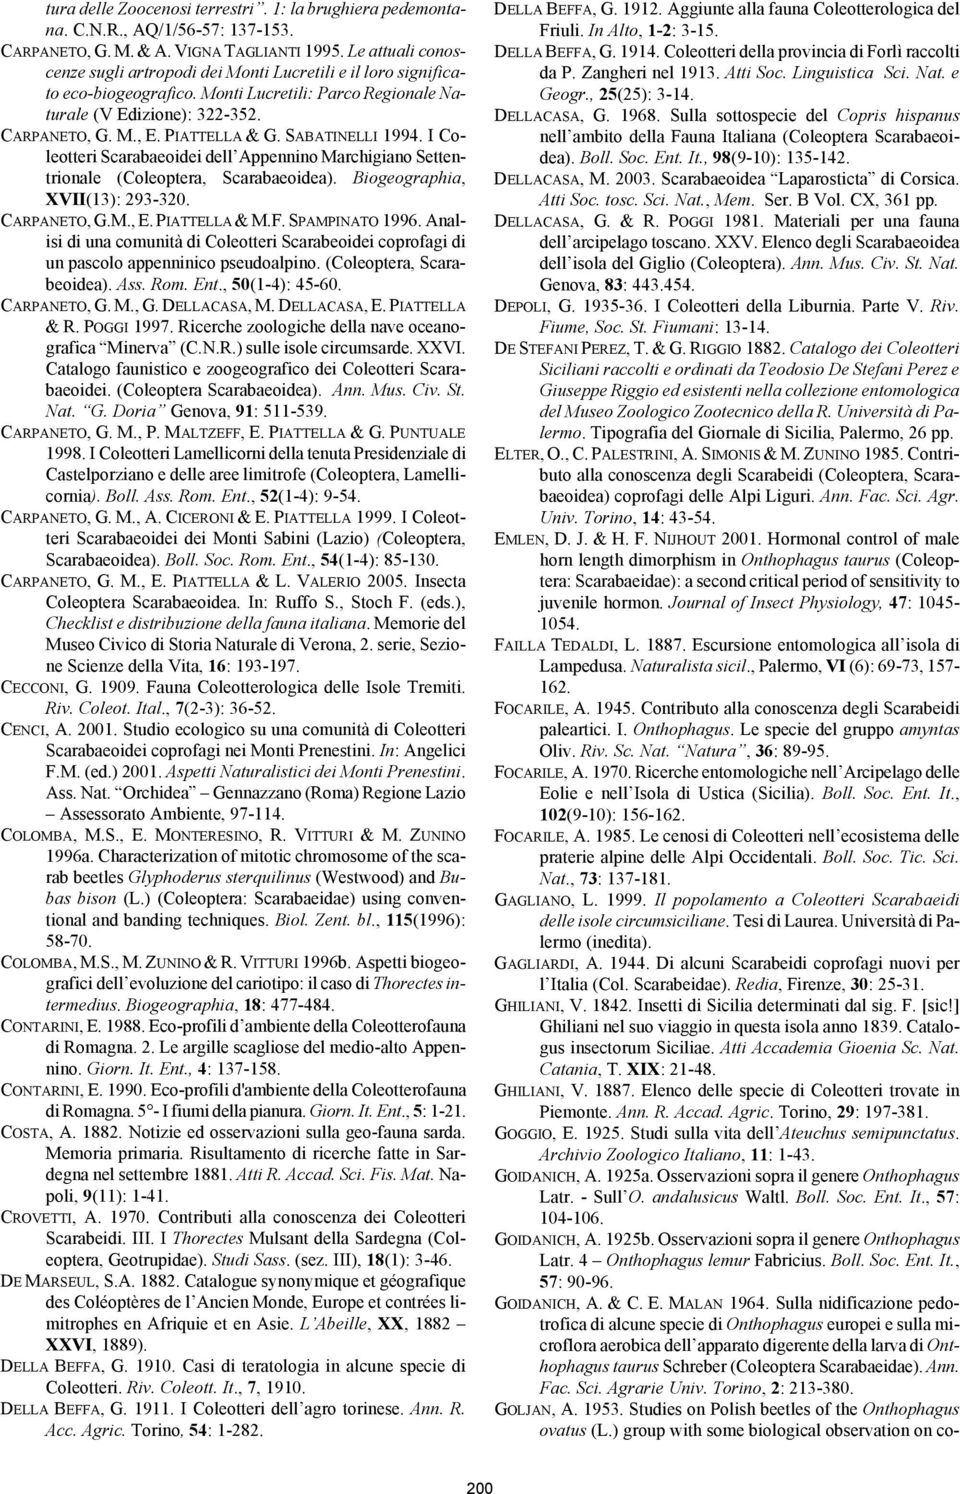 SABATINELLI 1994. I Coleotteri Scarabaeoidei dell Appennino Marchigiano Settentrionale (Coleoptera, Scarabaeoidea). Biogeographia, XVII(13): 293-320. CARPANETO, G.M., E. PIATTELLA & M.F.